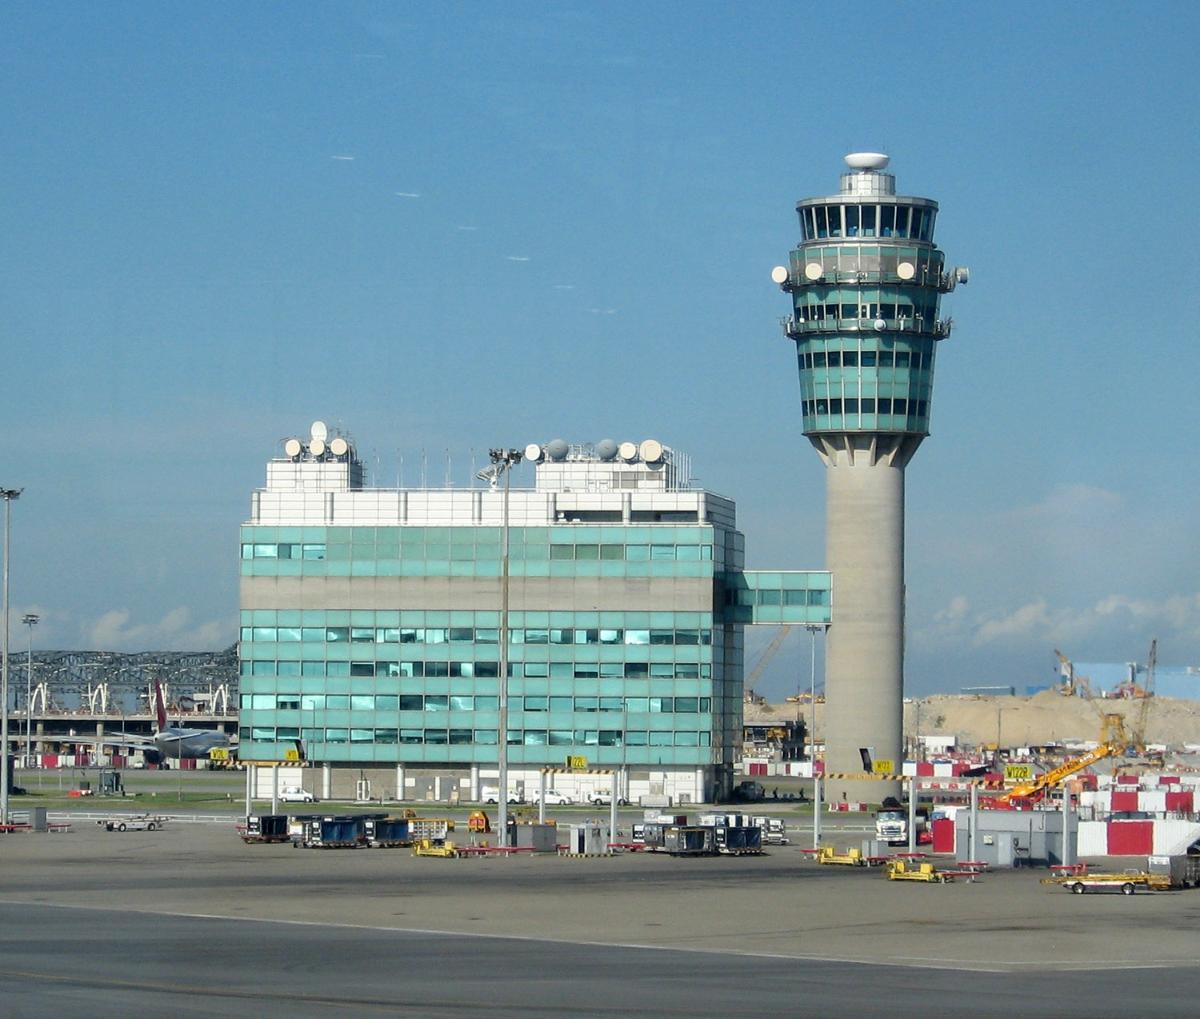 Control tower at Hong Kong International Airport, Terminal 1 